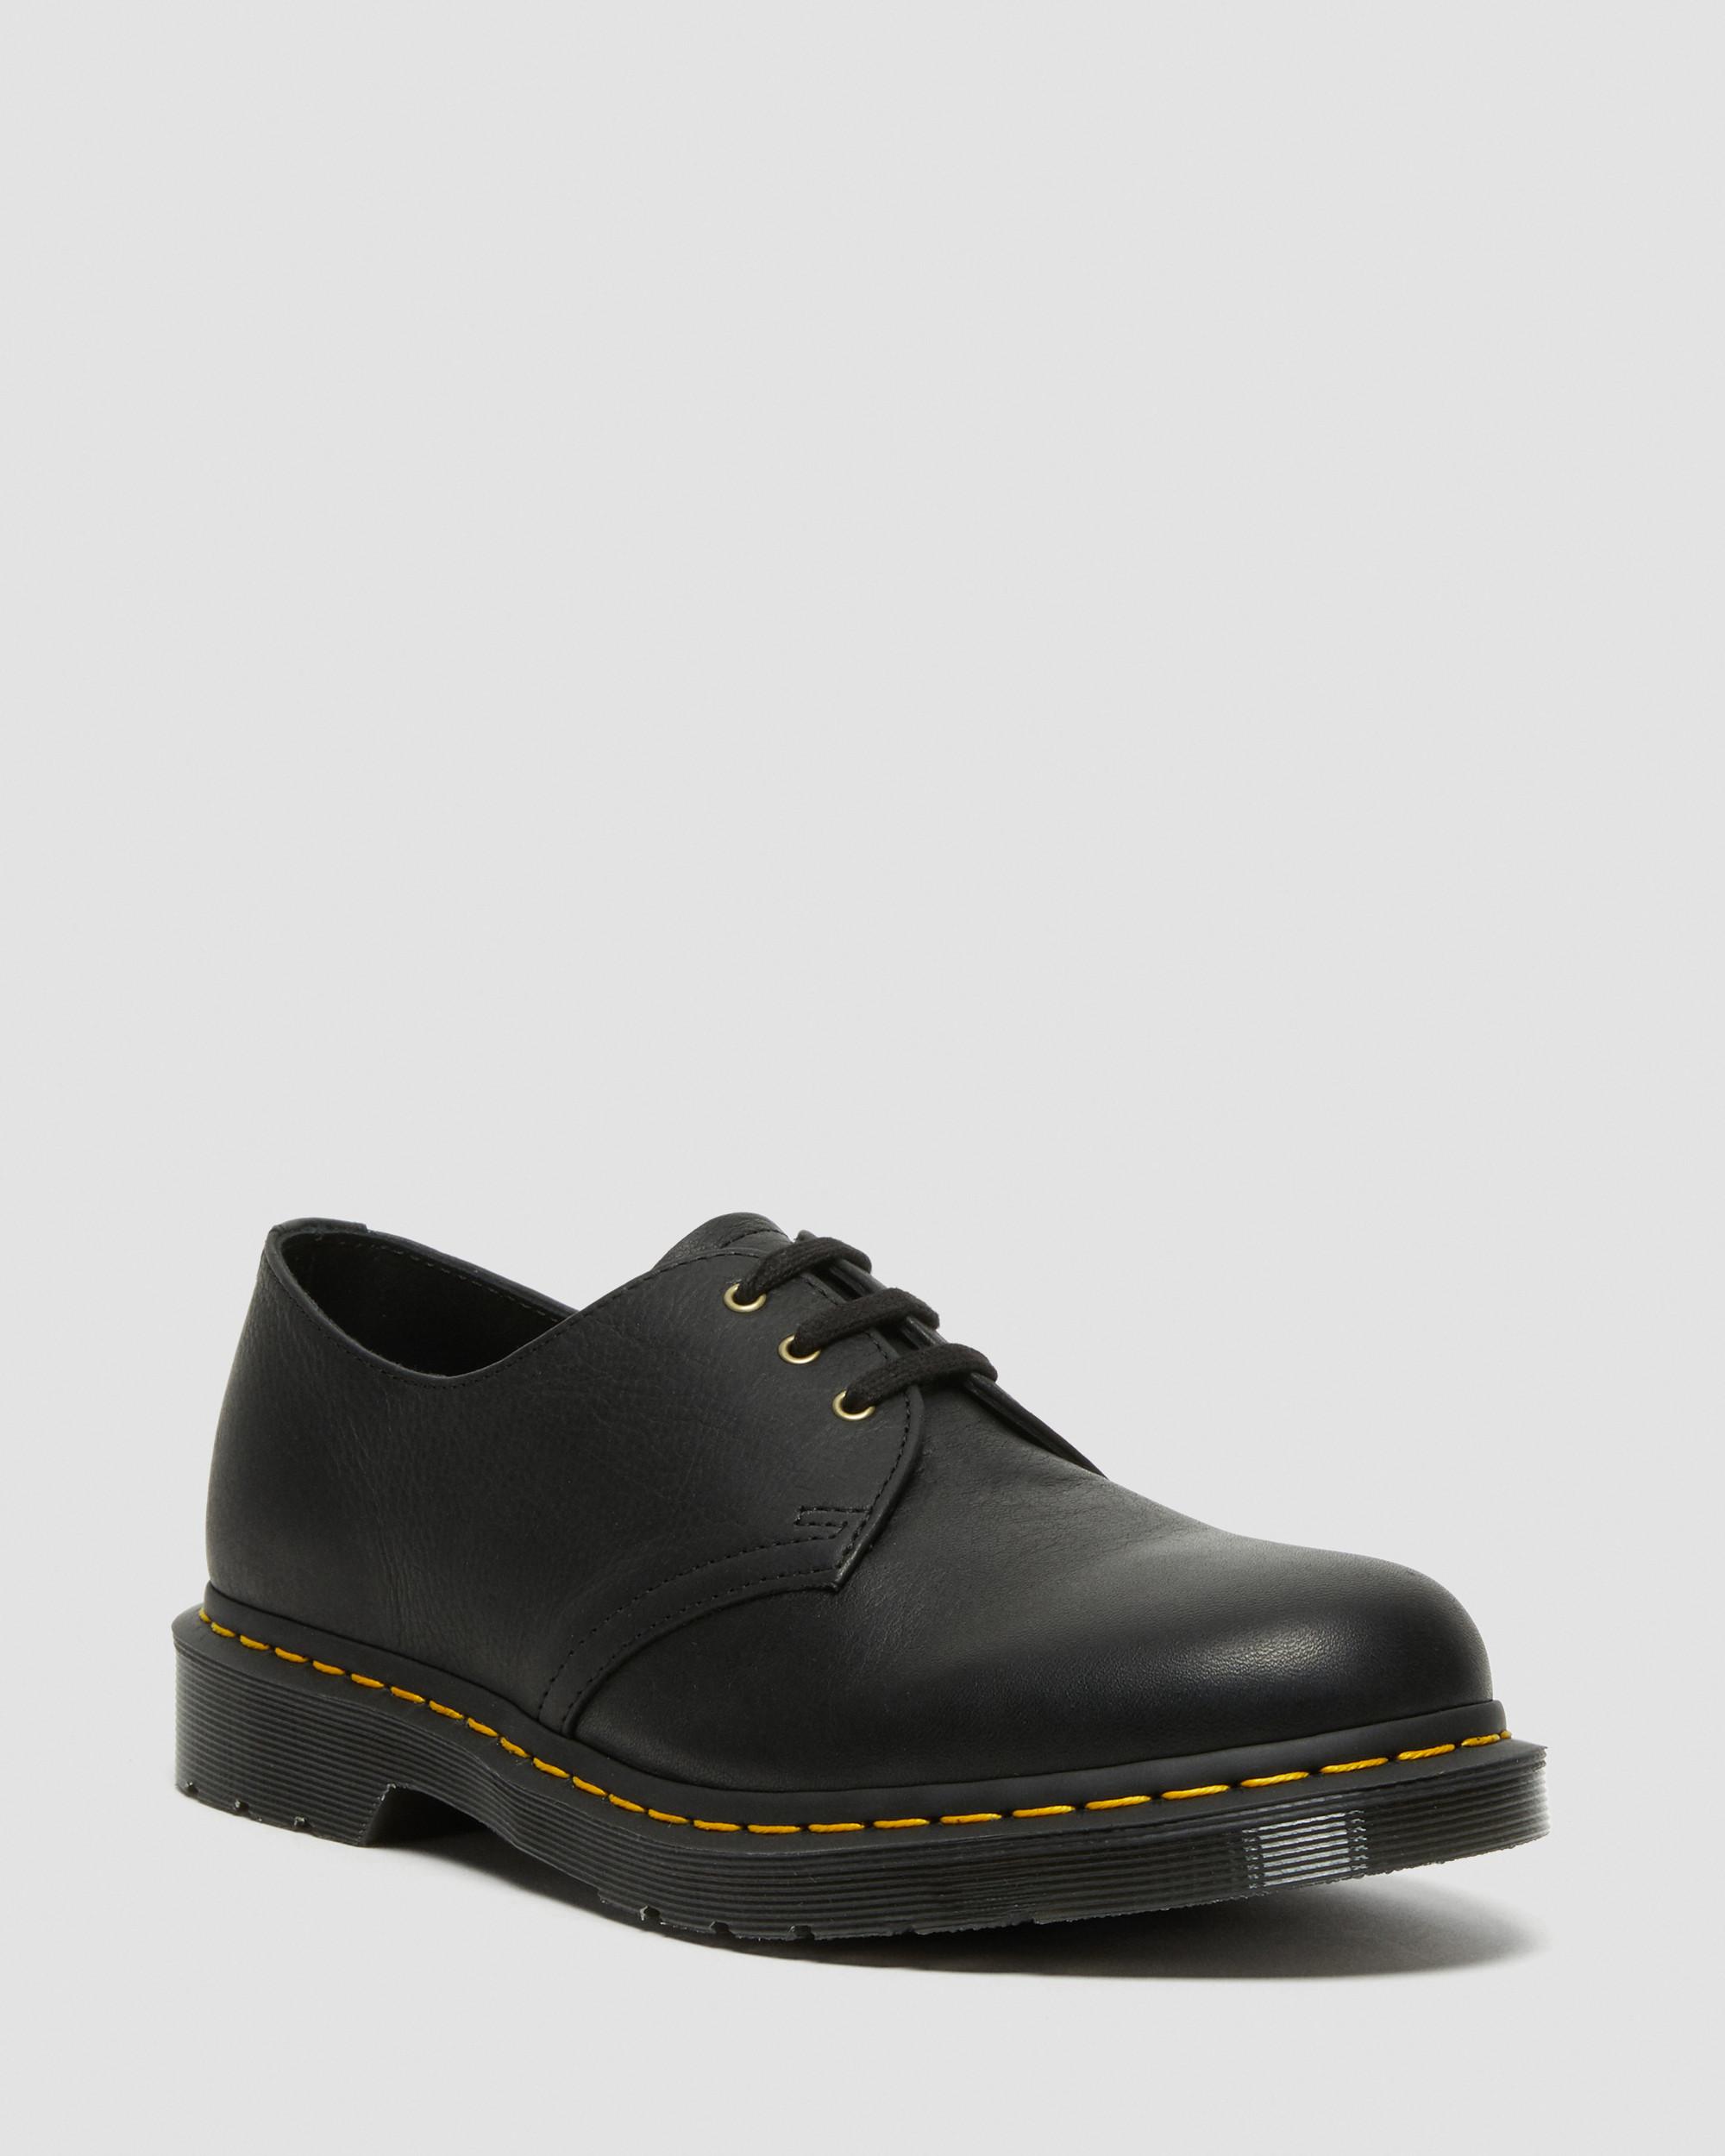 DR MARTENS 1461 Ambassador Leather Oxford Shoes